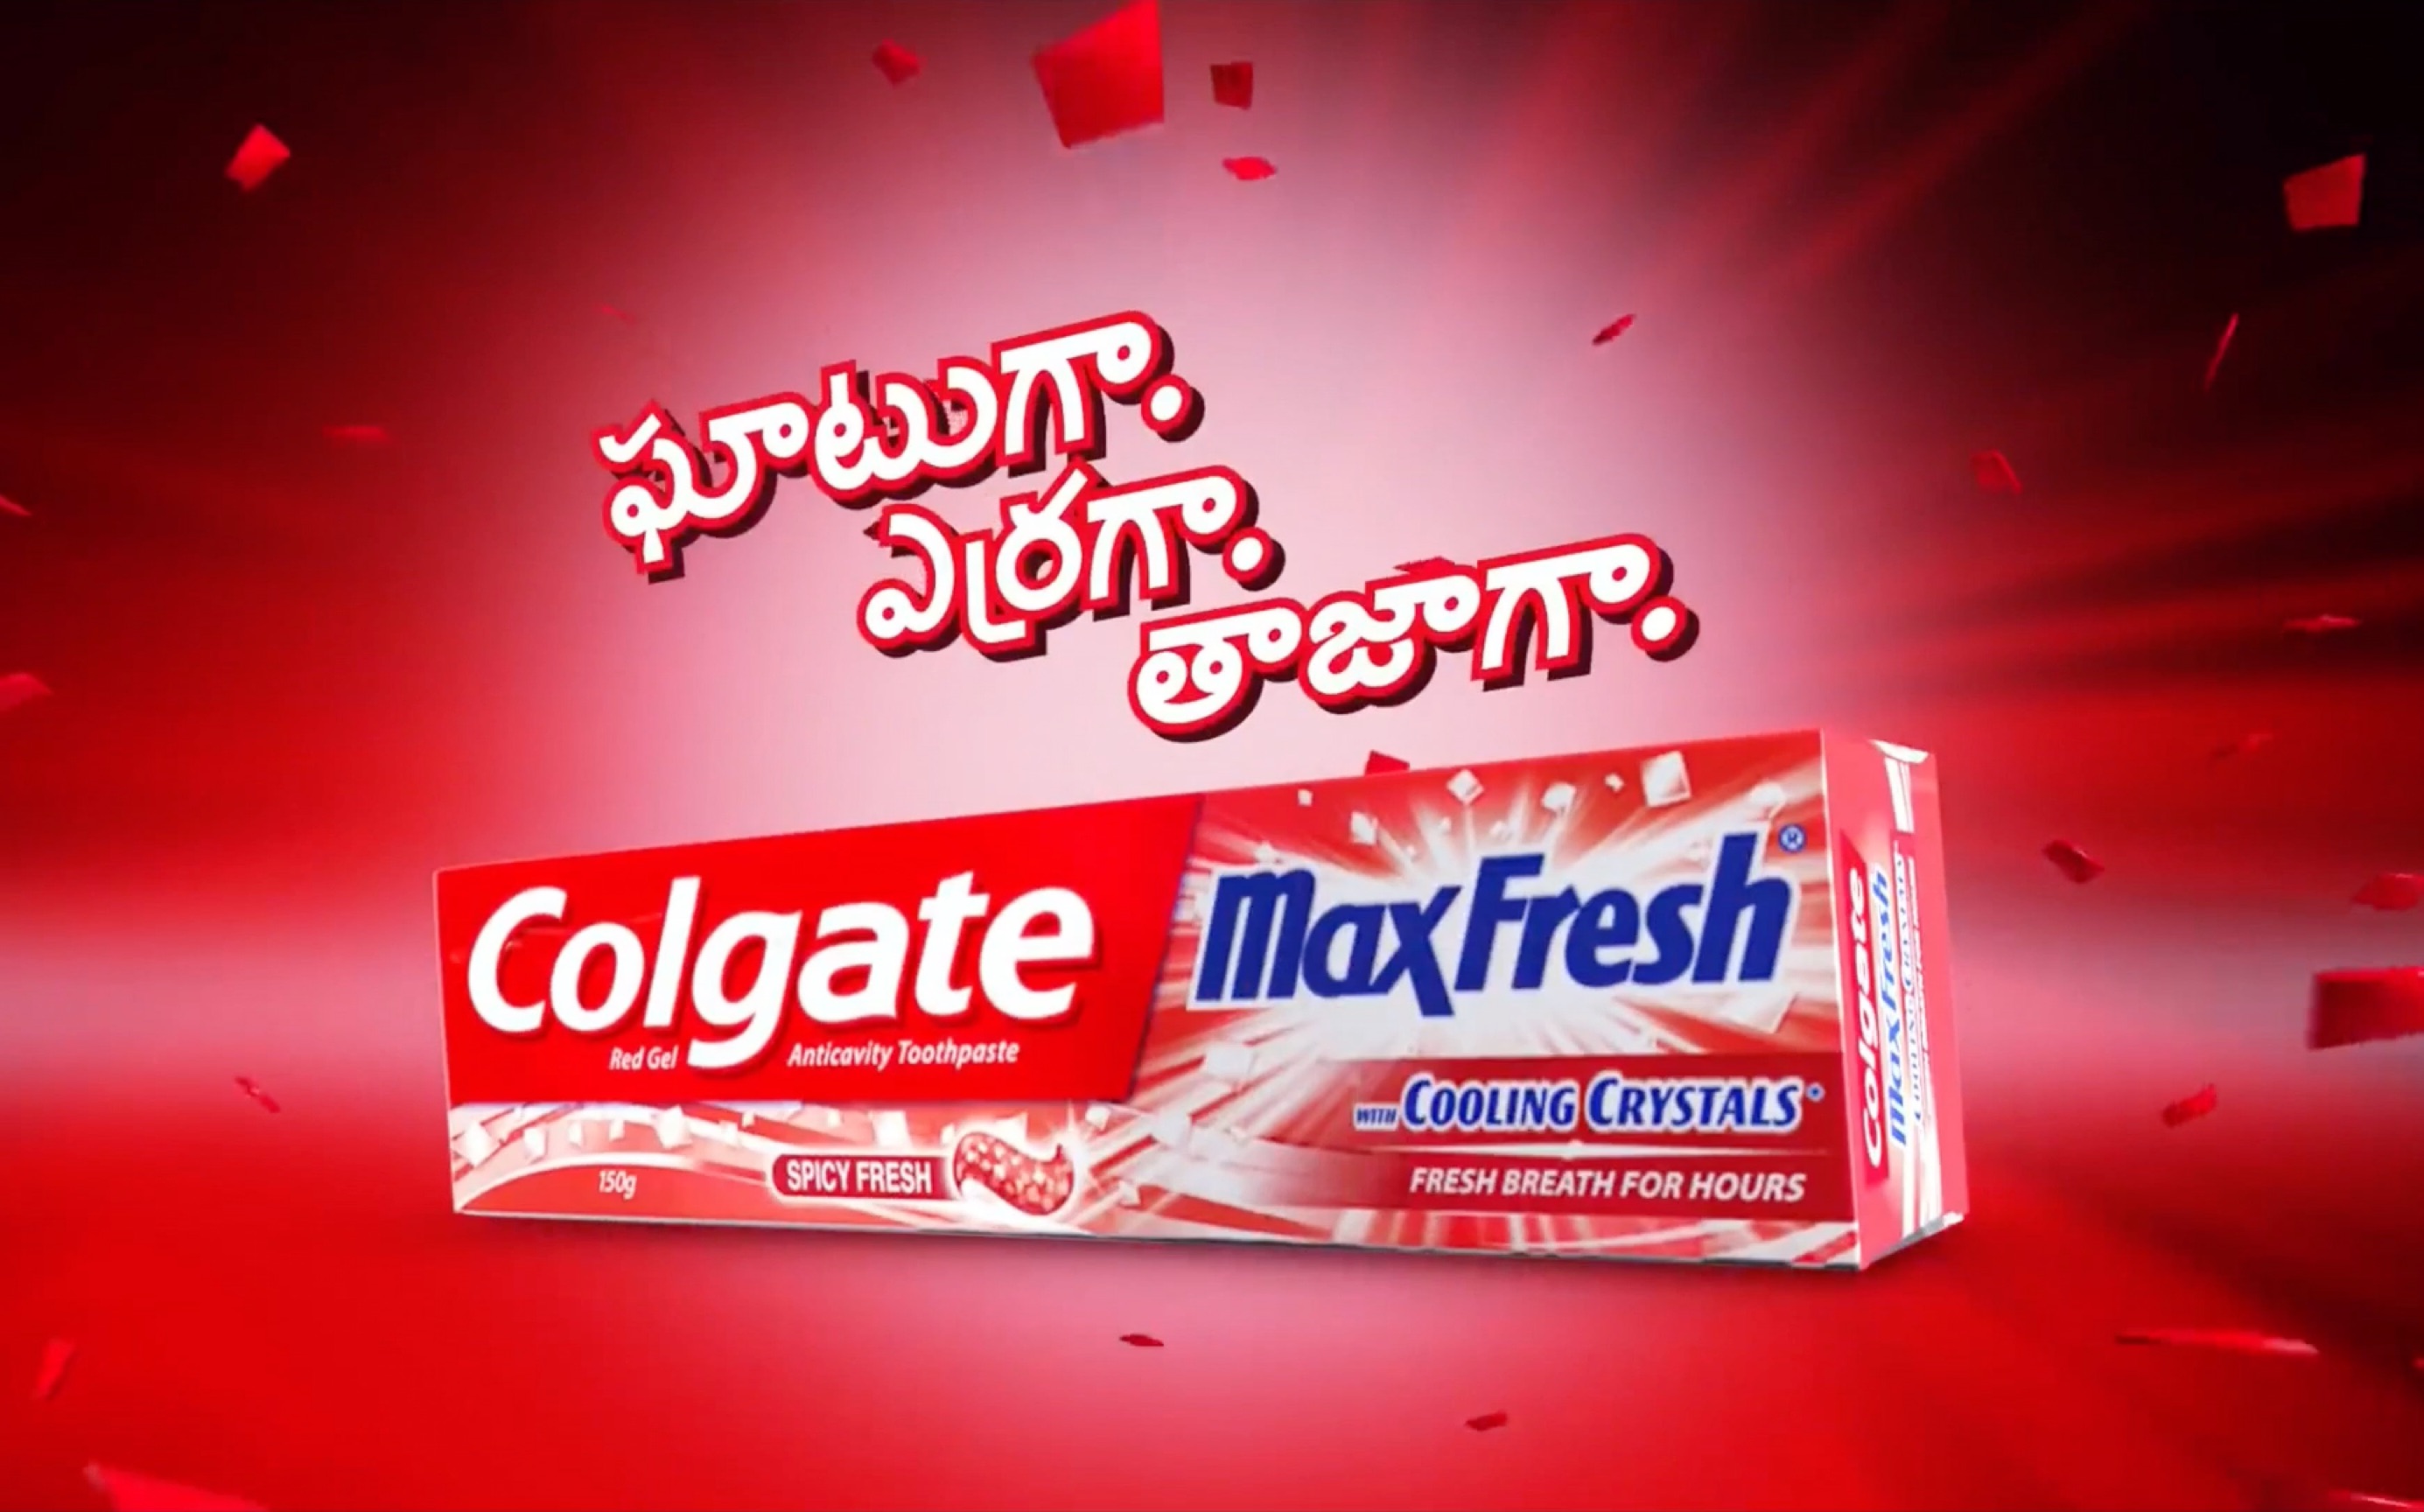 印度泰米尔语广告(2016)高露洁maxfresh牙膏